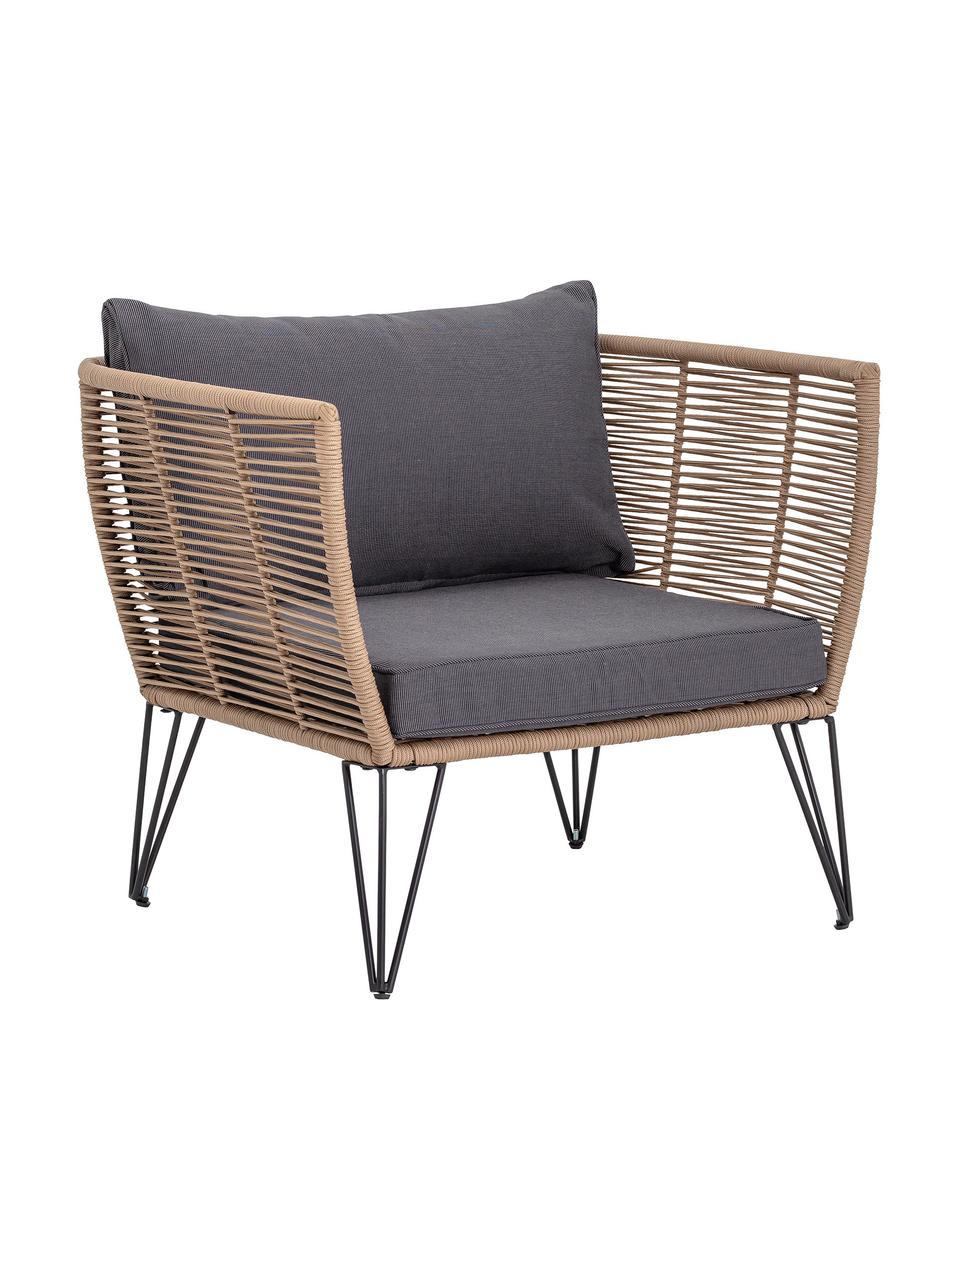 Tuin fauteuil Mundo met kunststoffen vlechtwerk, Frame: metaal, gepoedercoat, Bruin, B 87 x D 74 cm